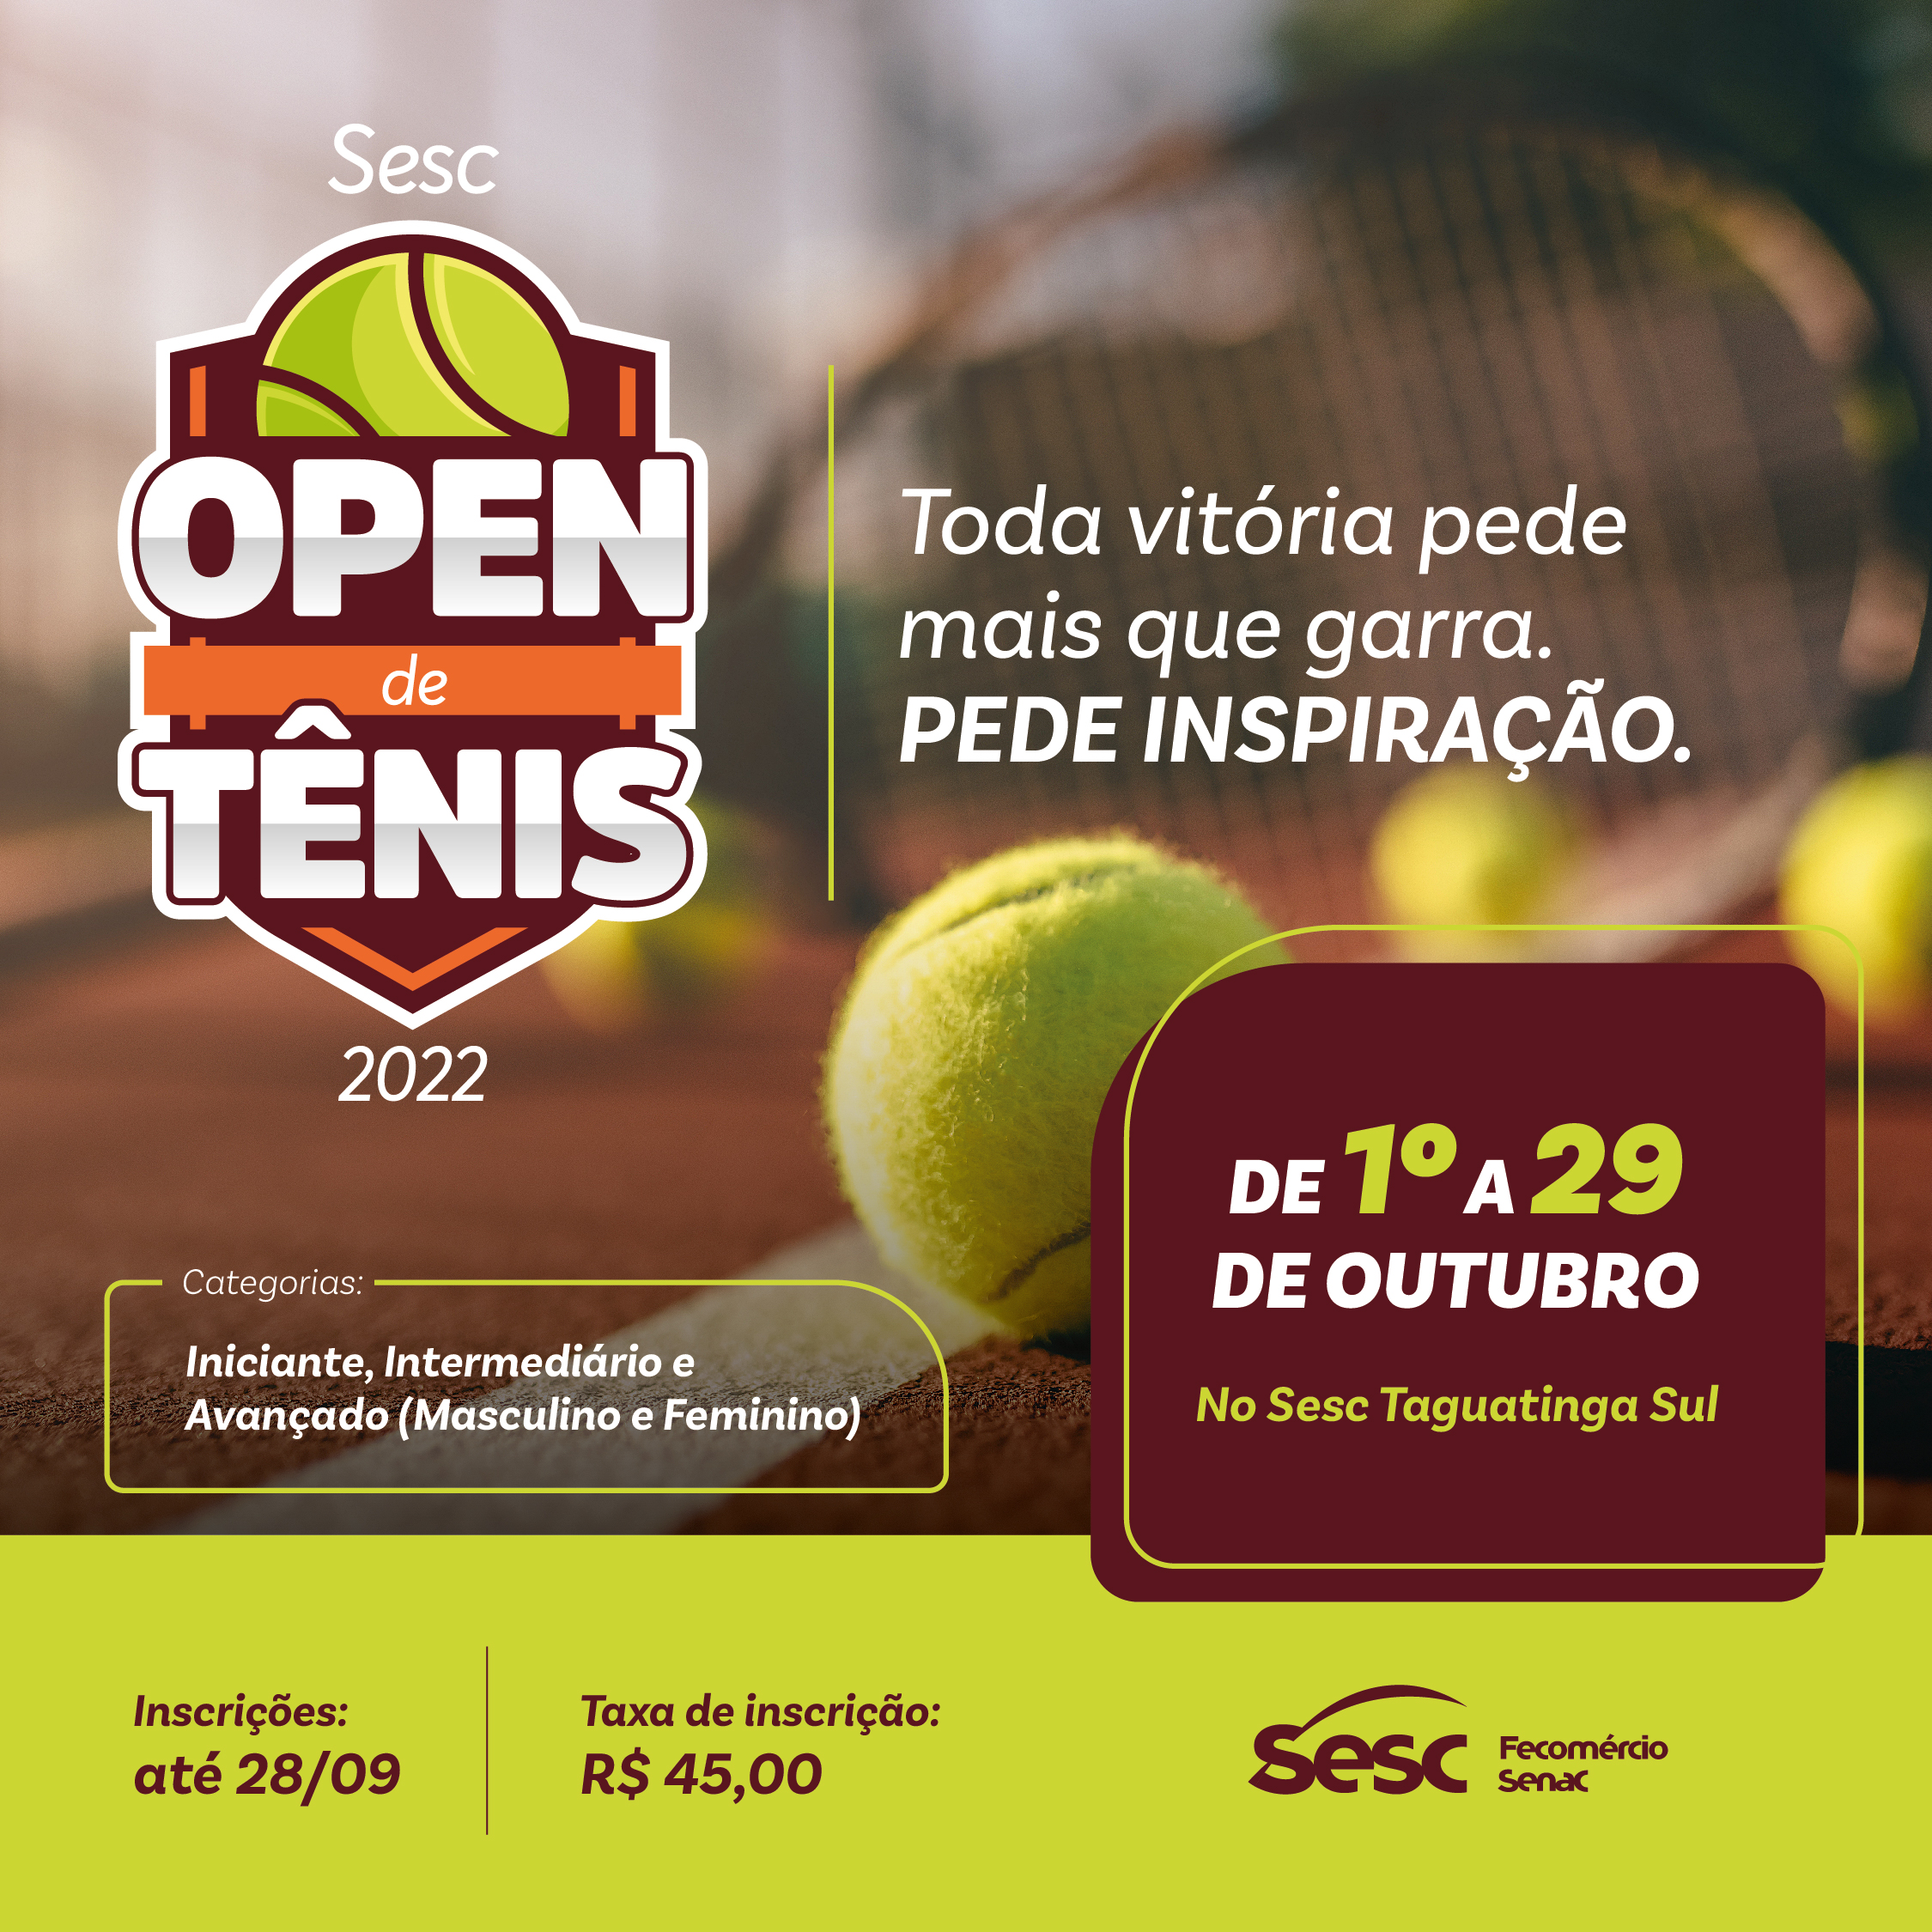 ________001209 - Open de Tenis - Sesc_Post.jpg